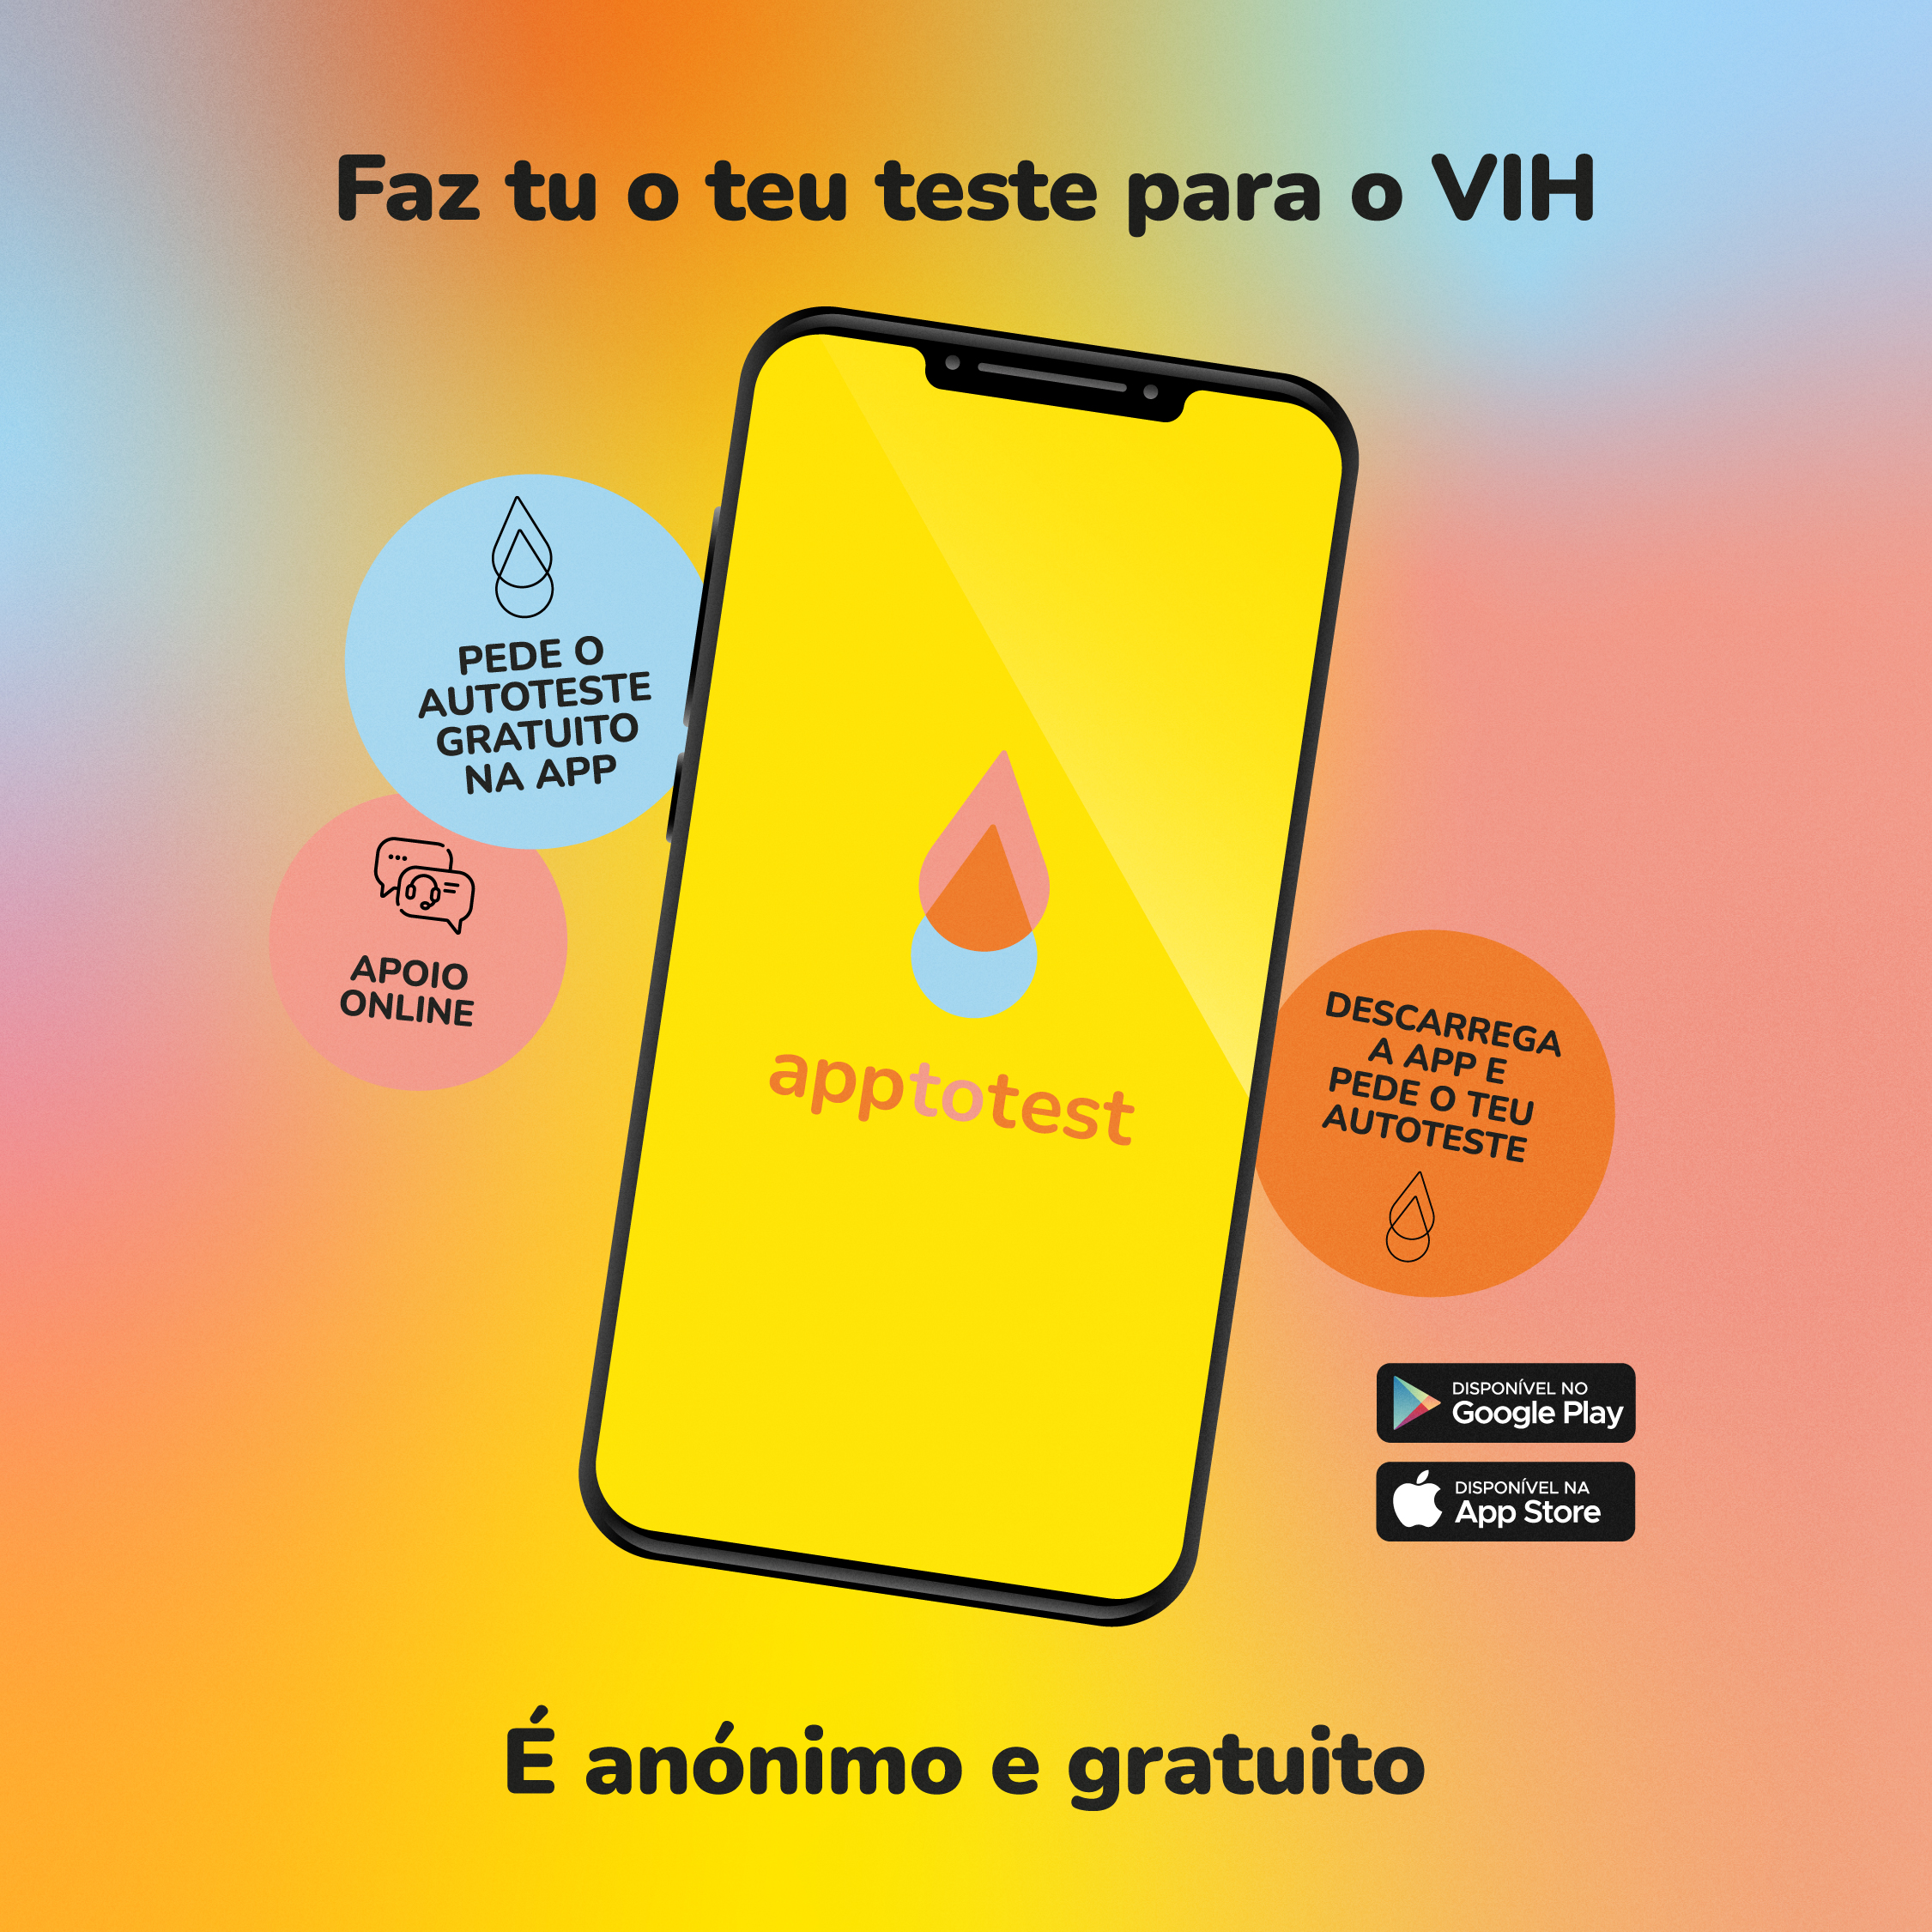 AppToTest irá distribuir 600 autotestes para o VIH na região do Grande Porto